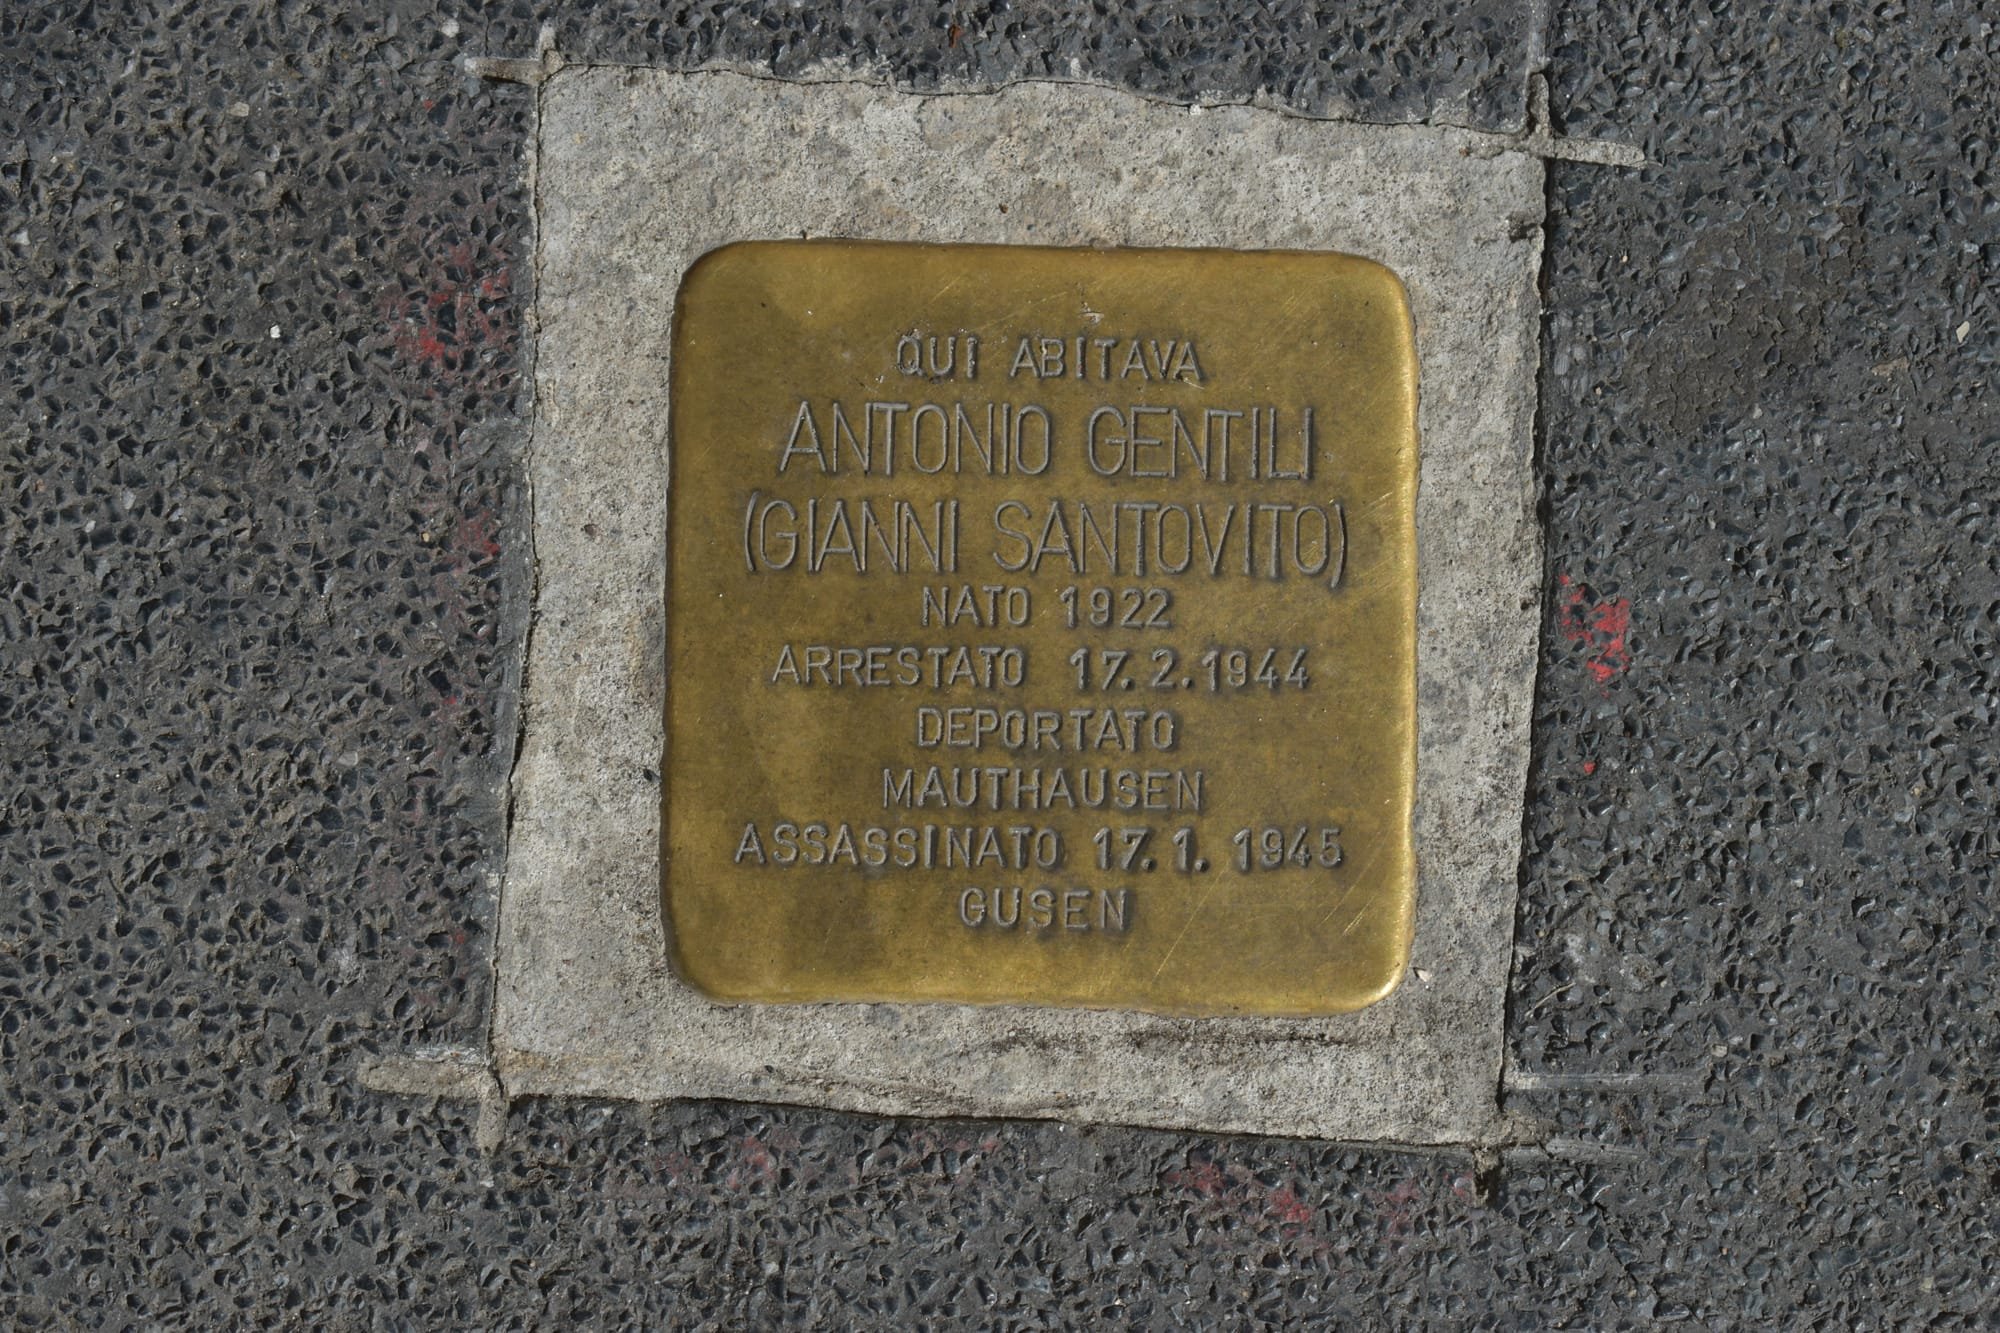 10 Antonio Gentili - Via Paravia 84